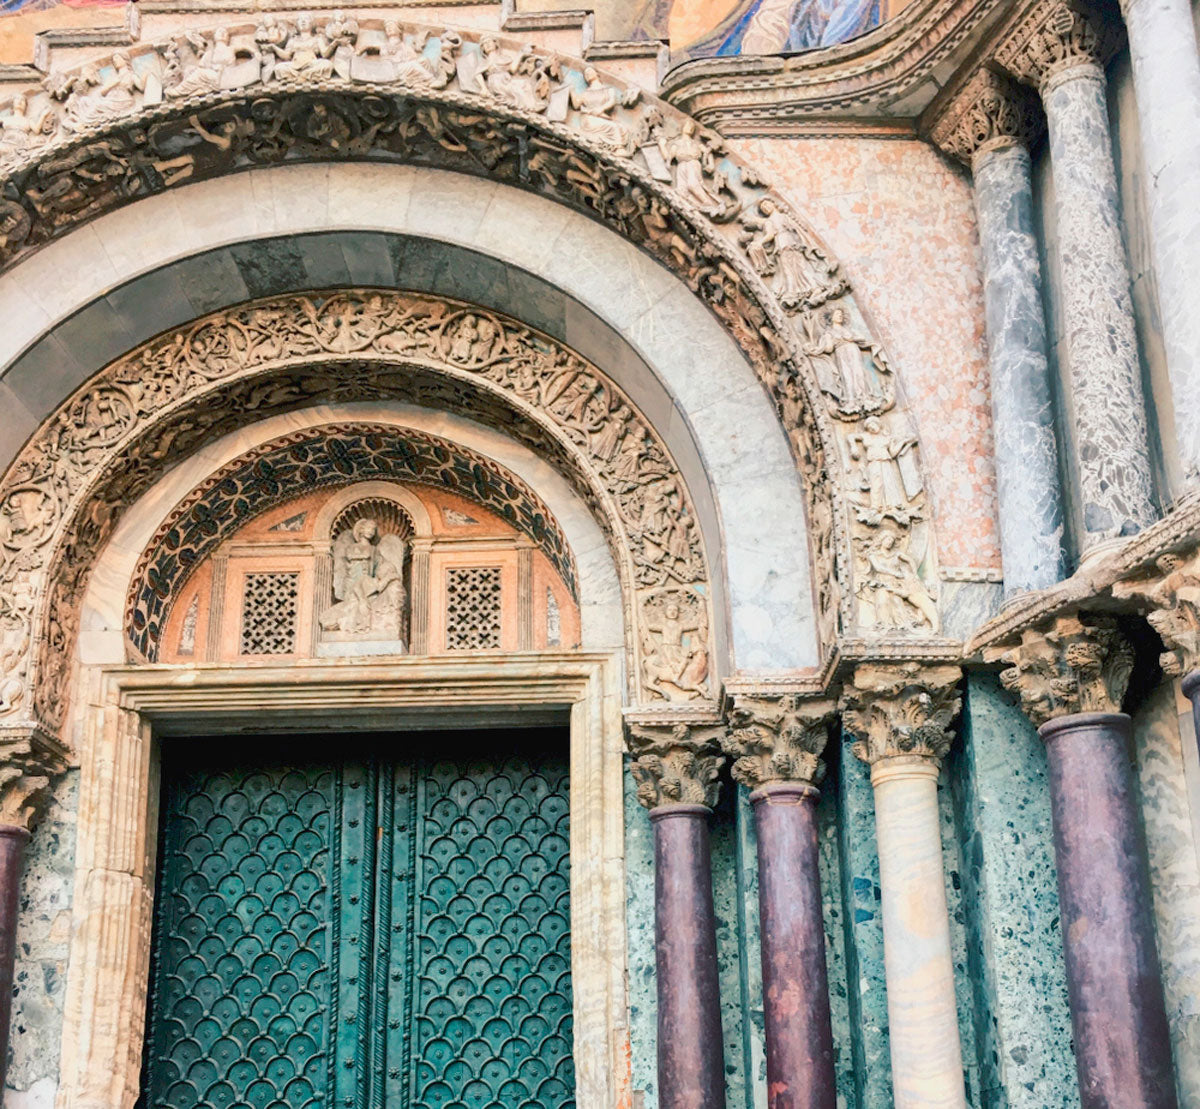 La Basílica de San Marcos que se conoce hoy en día es el resultado de la mano de obra del pueblo veneciano que en el año 932 tuvo que reconstruirla después de un incendio. Sus paredes, fachadas y cúpulas destacan por su revestimiento de diferentes mármoles.